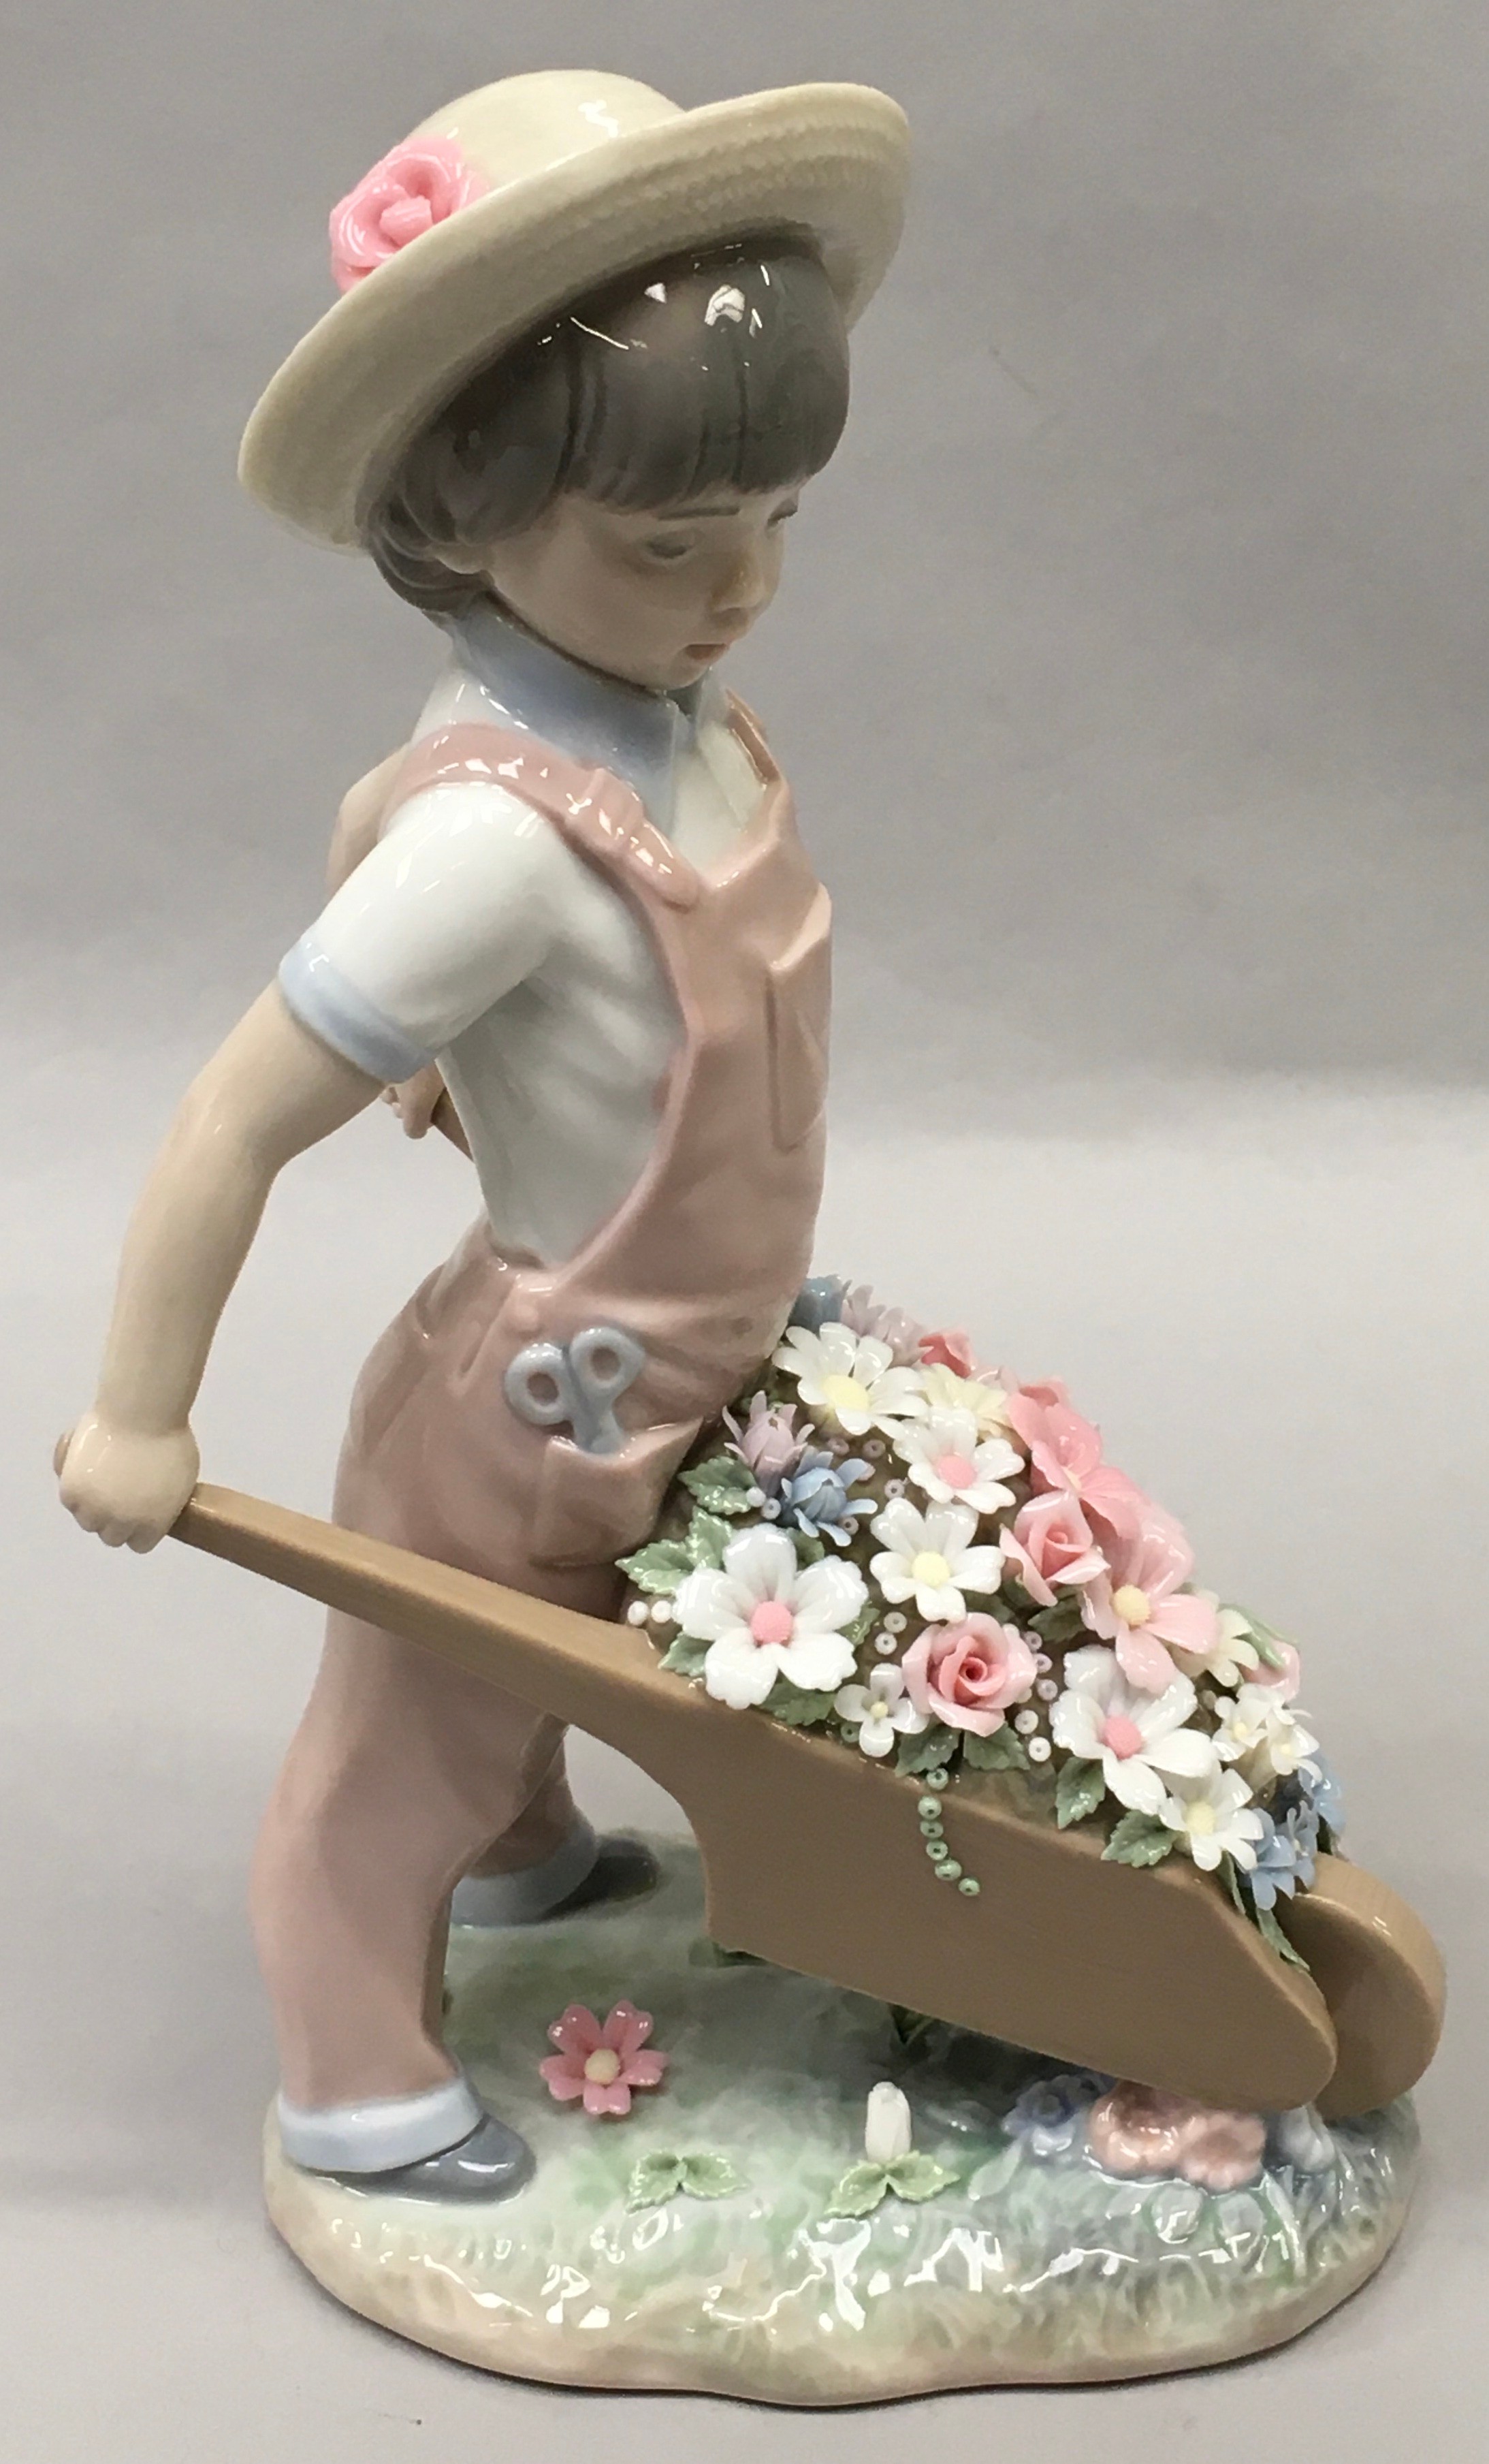 Lladro "1283" Little Gardener porcelain figure. - Image 4 of 5